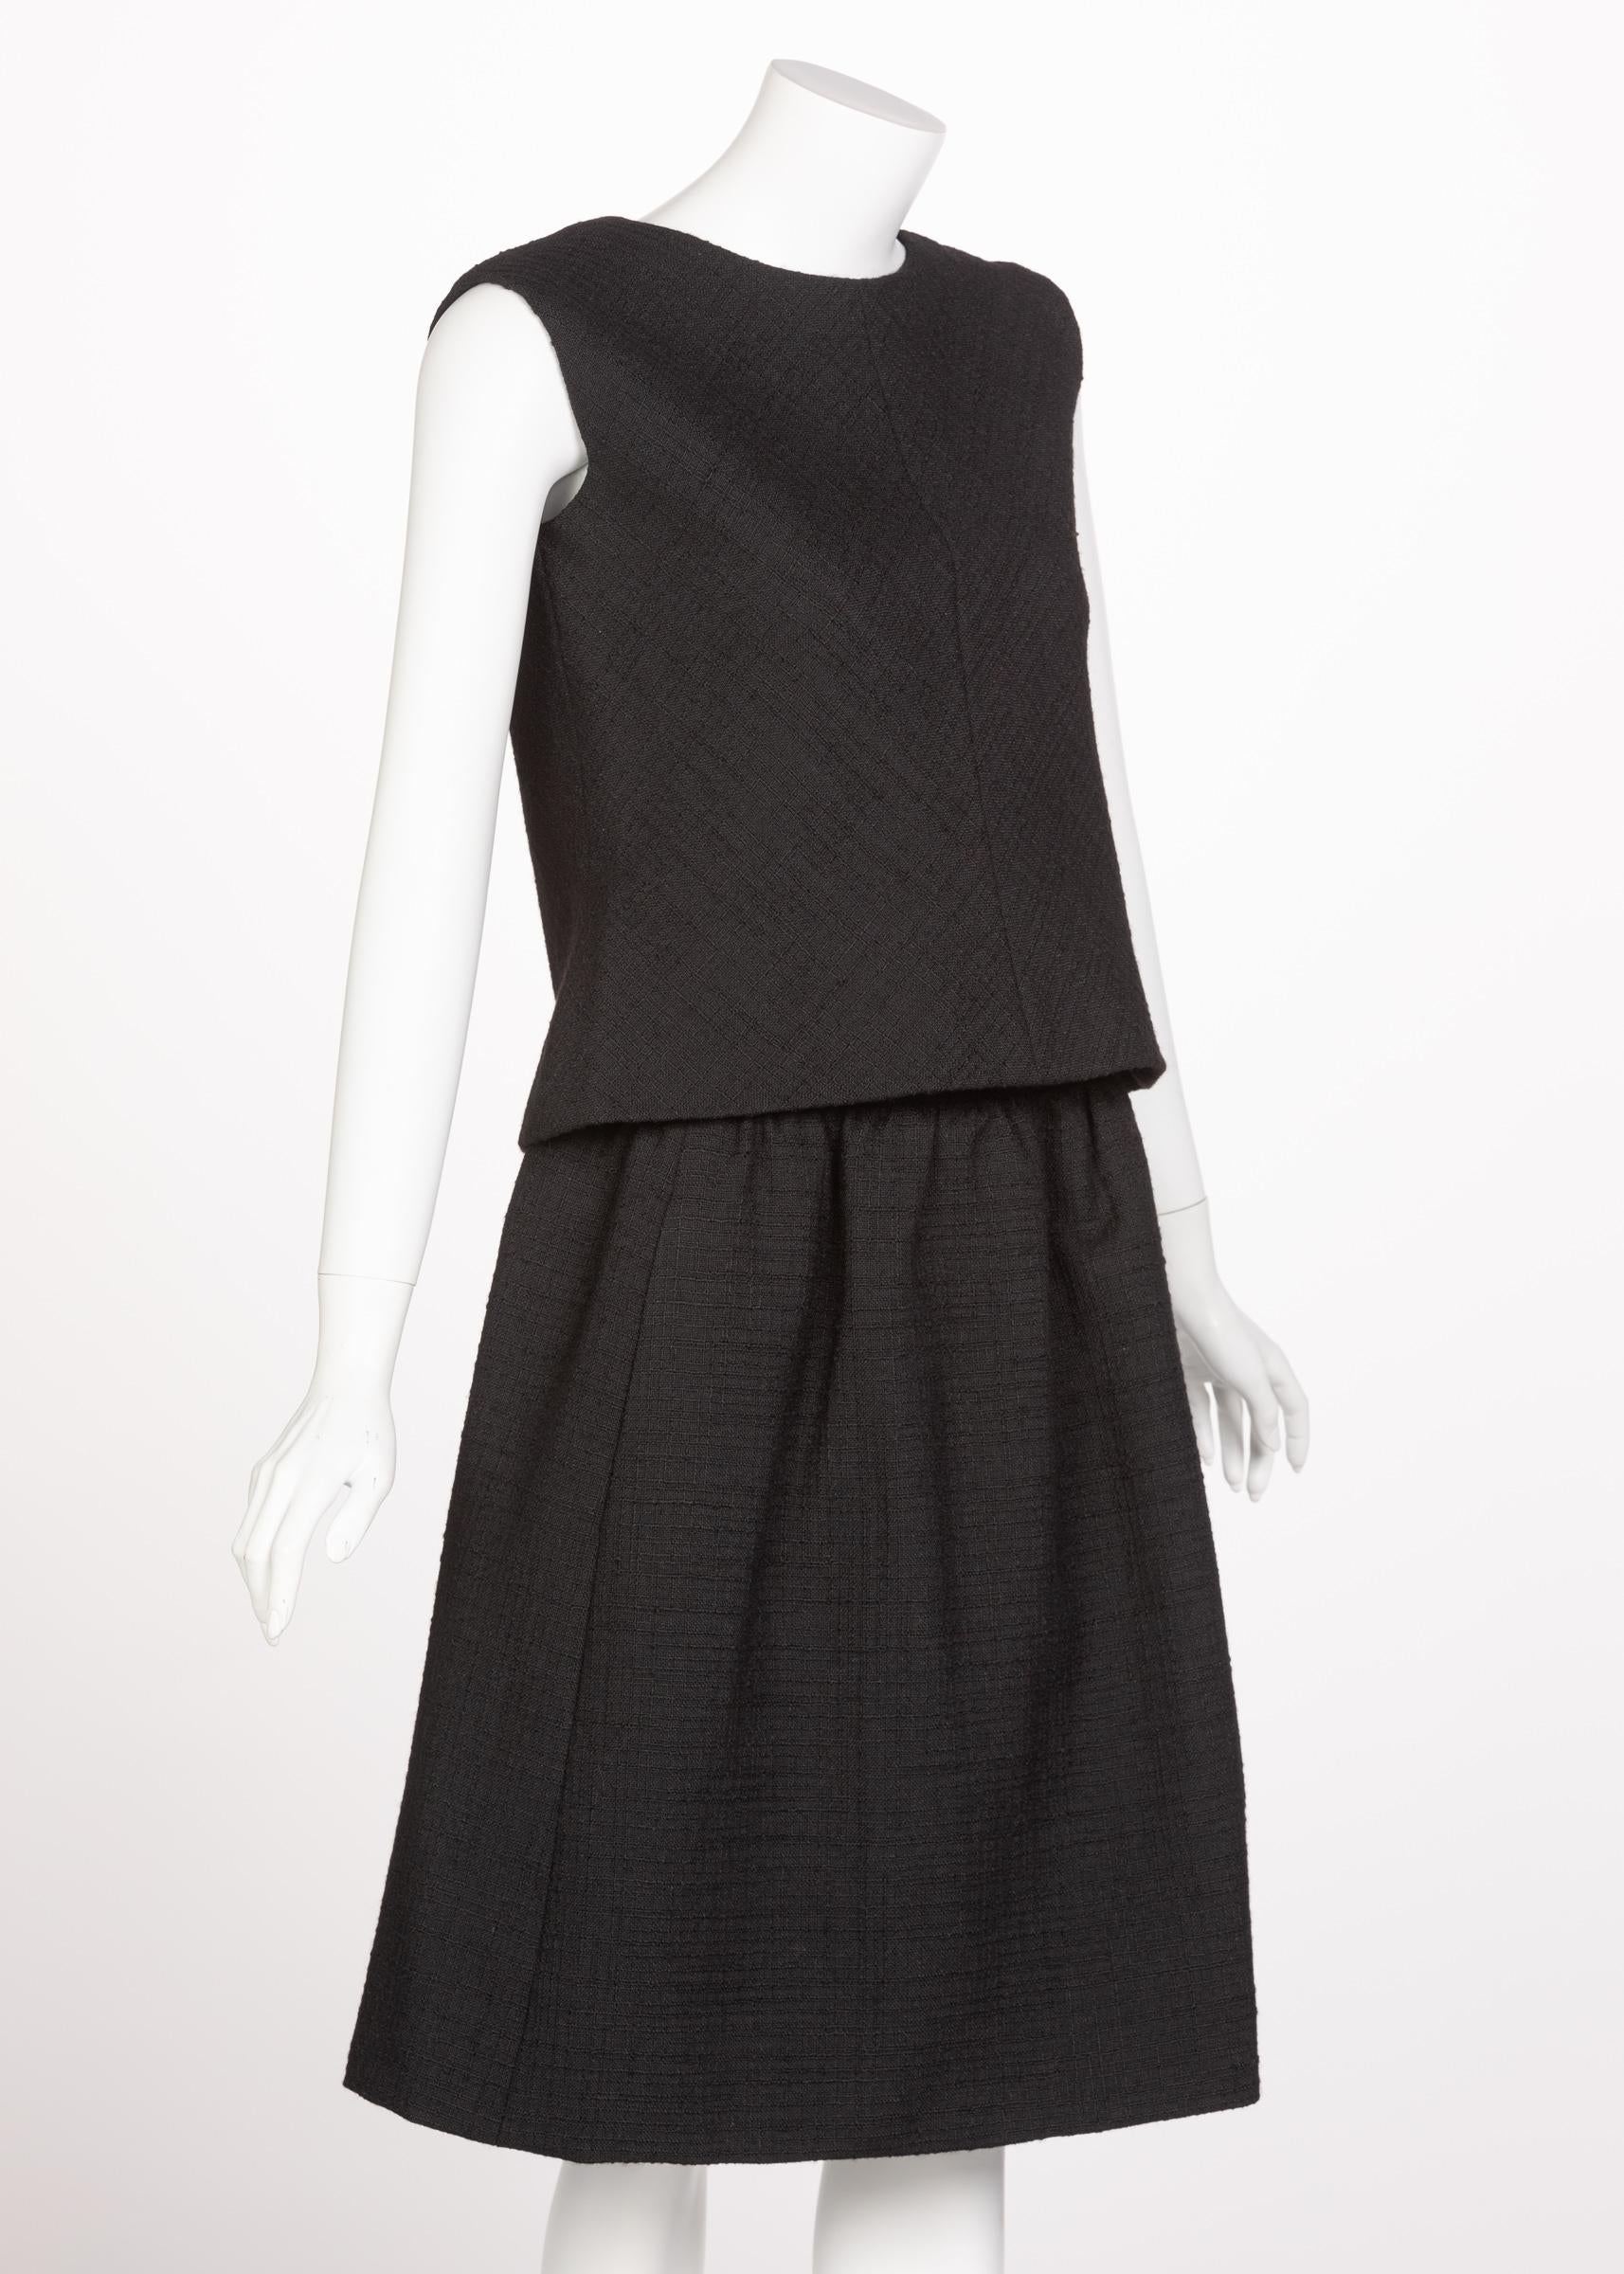 Noir Norman Norell Couture Tailleur jupe tailleur noir/haut sans manches, années 1960 en vente